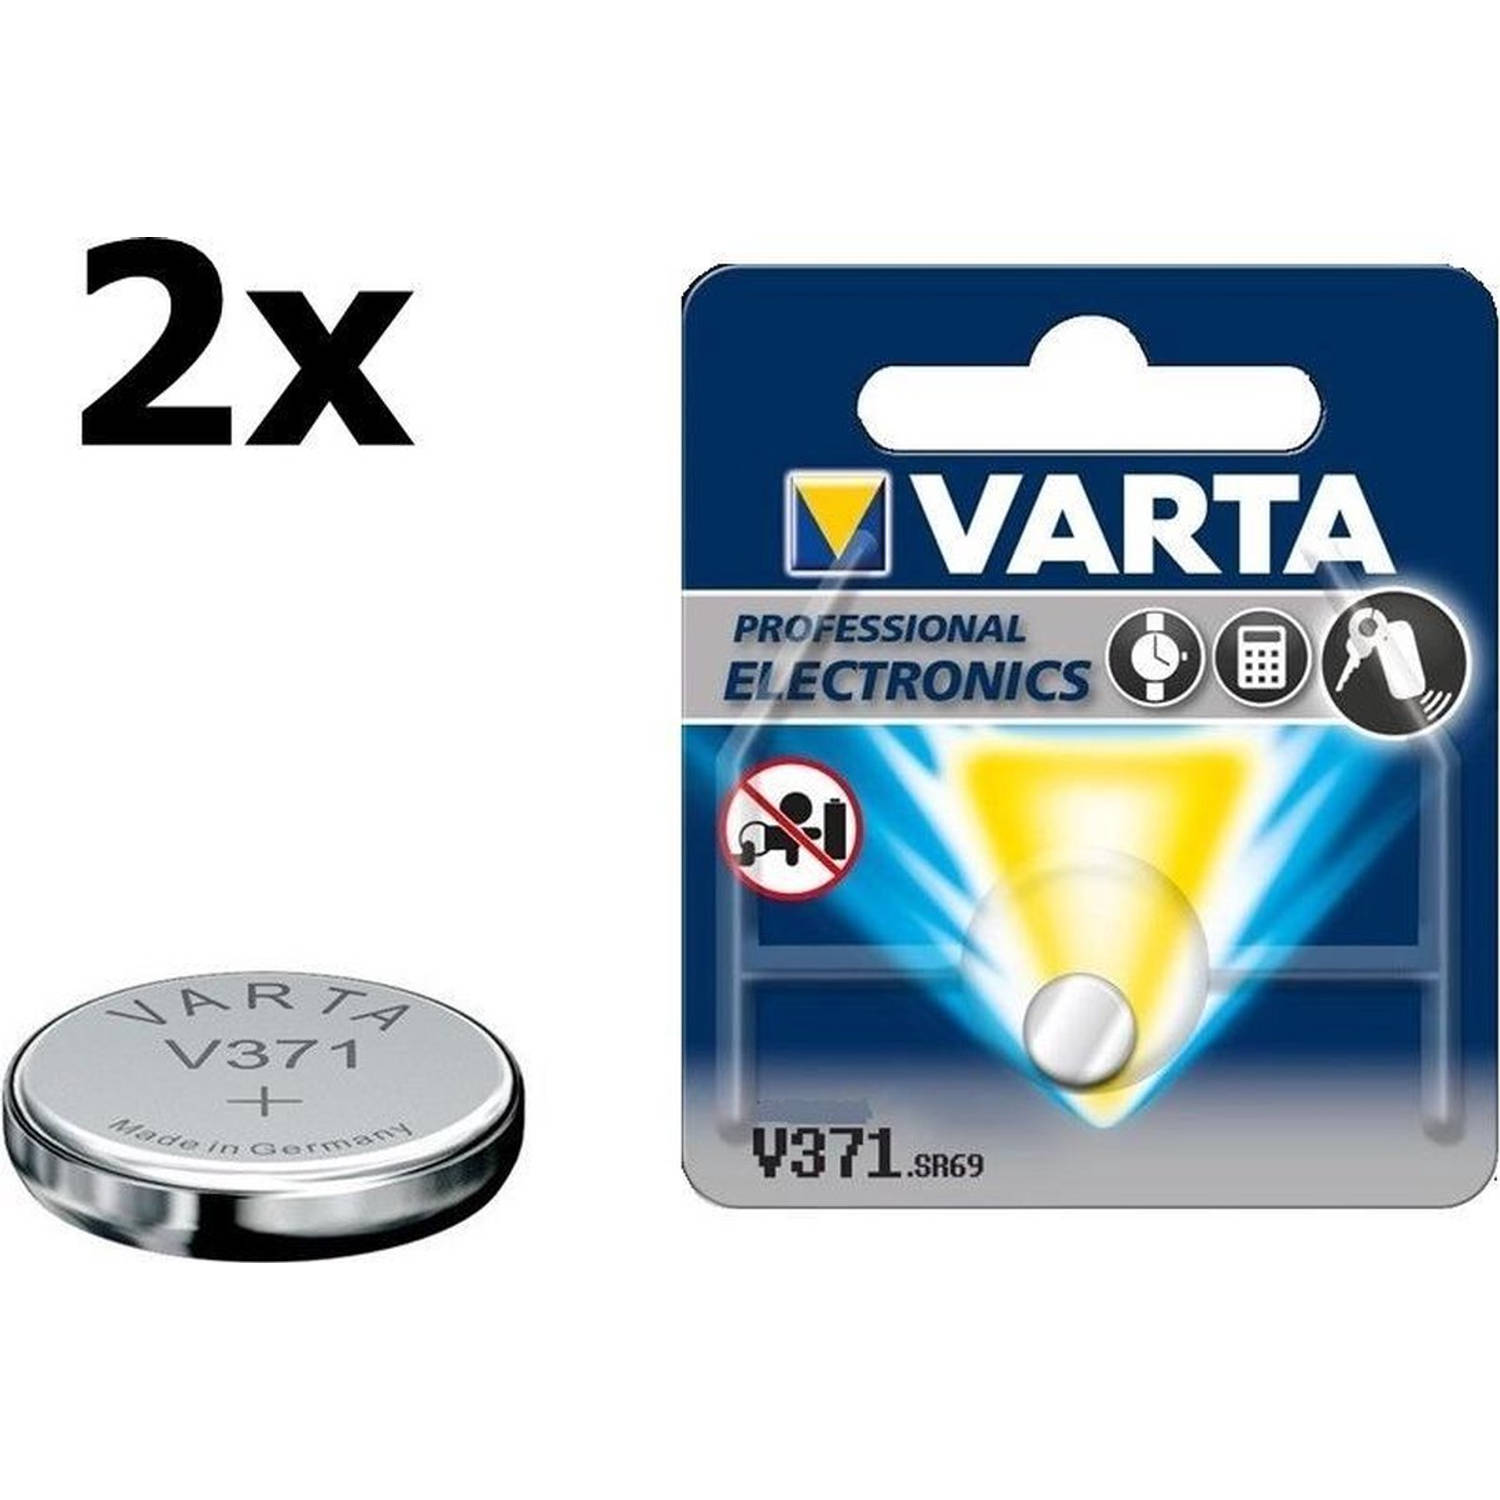 2 Stuks - Varta V371 44mAh 1.55V knoopcel batterij